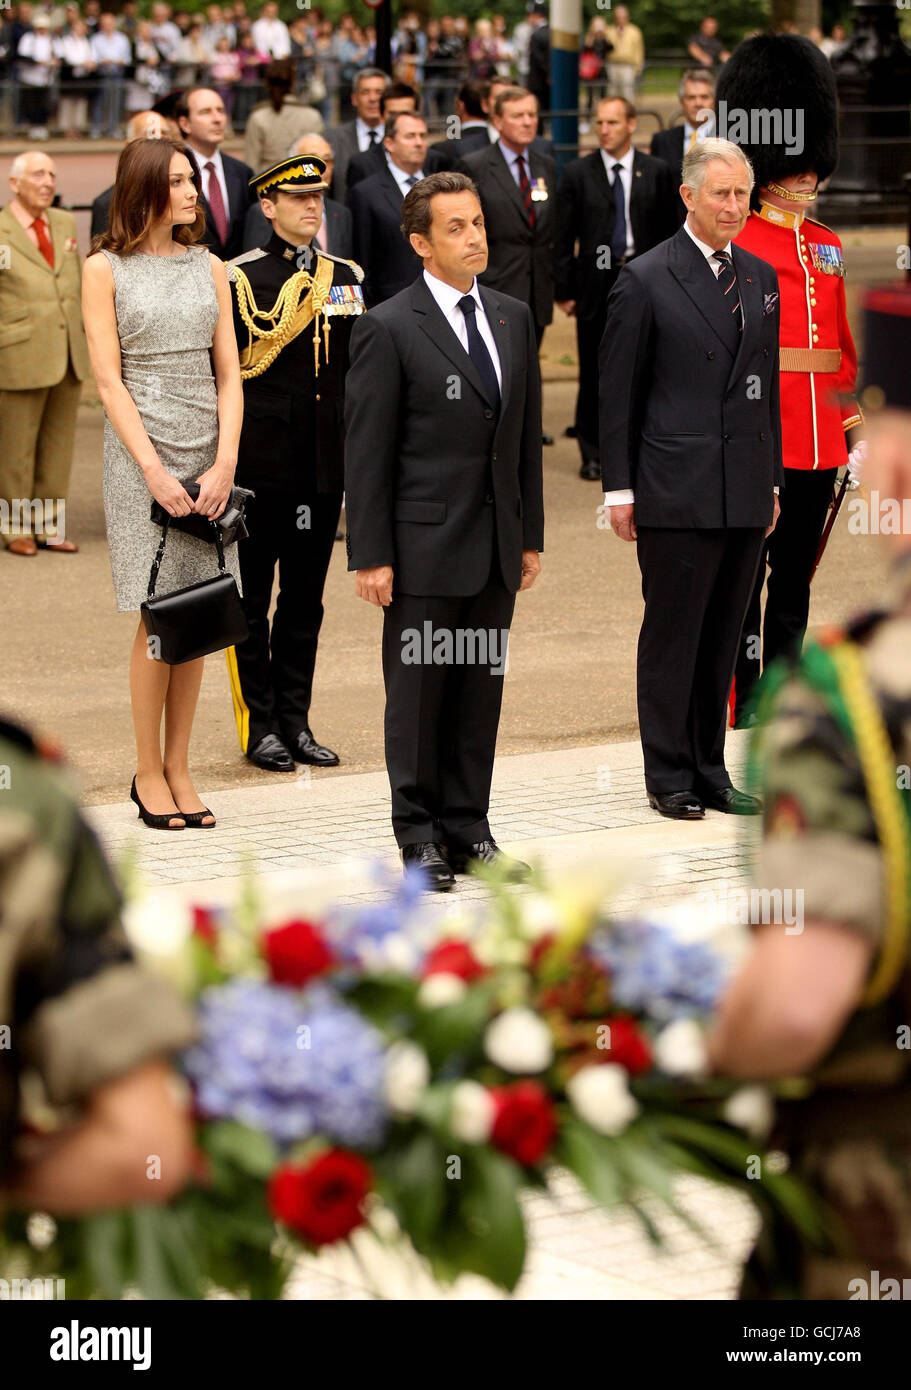 Le prince de Galles (à droite) le président français Nicolas Sarkozy (au centre) et son épouse Carla Bruni se préparent à déposer une couronne sur les statues de HM King George VI et HM Queen Elizabeth sur le Mall de Londres. Banque D'Images